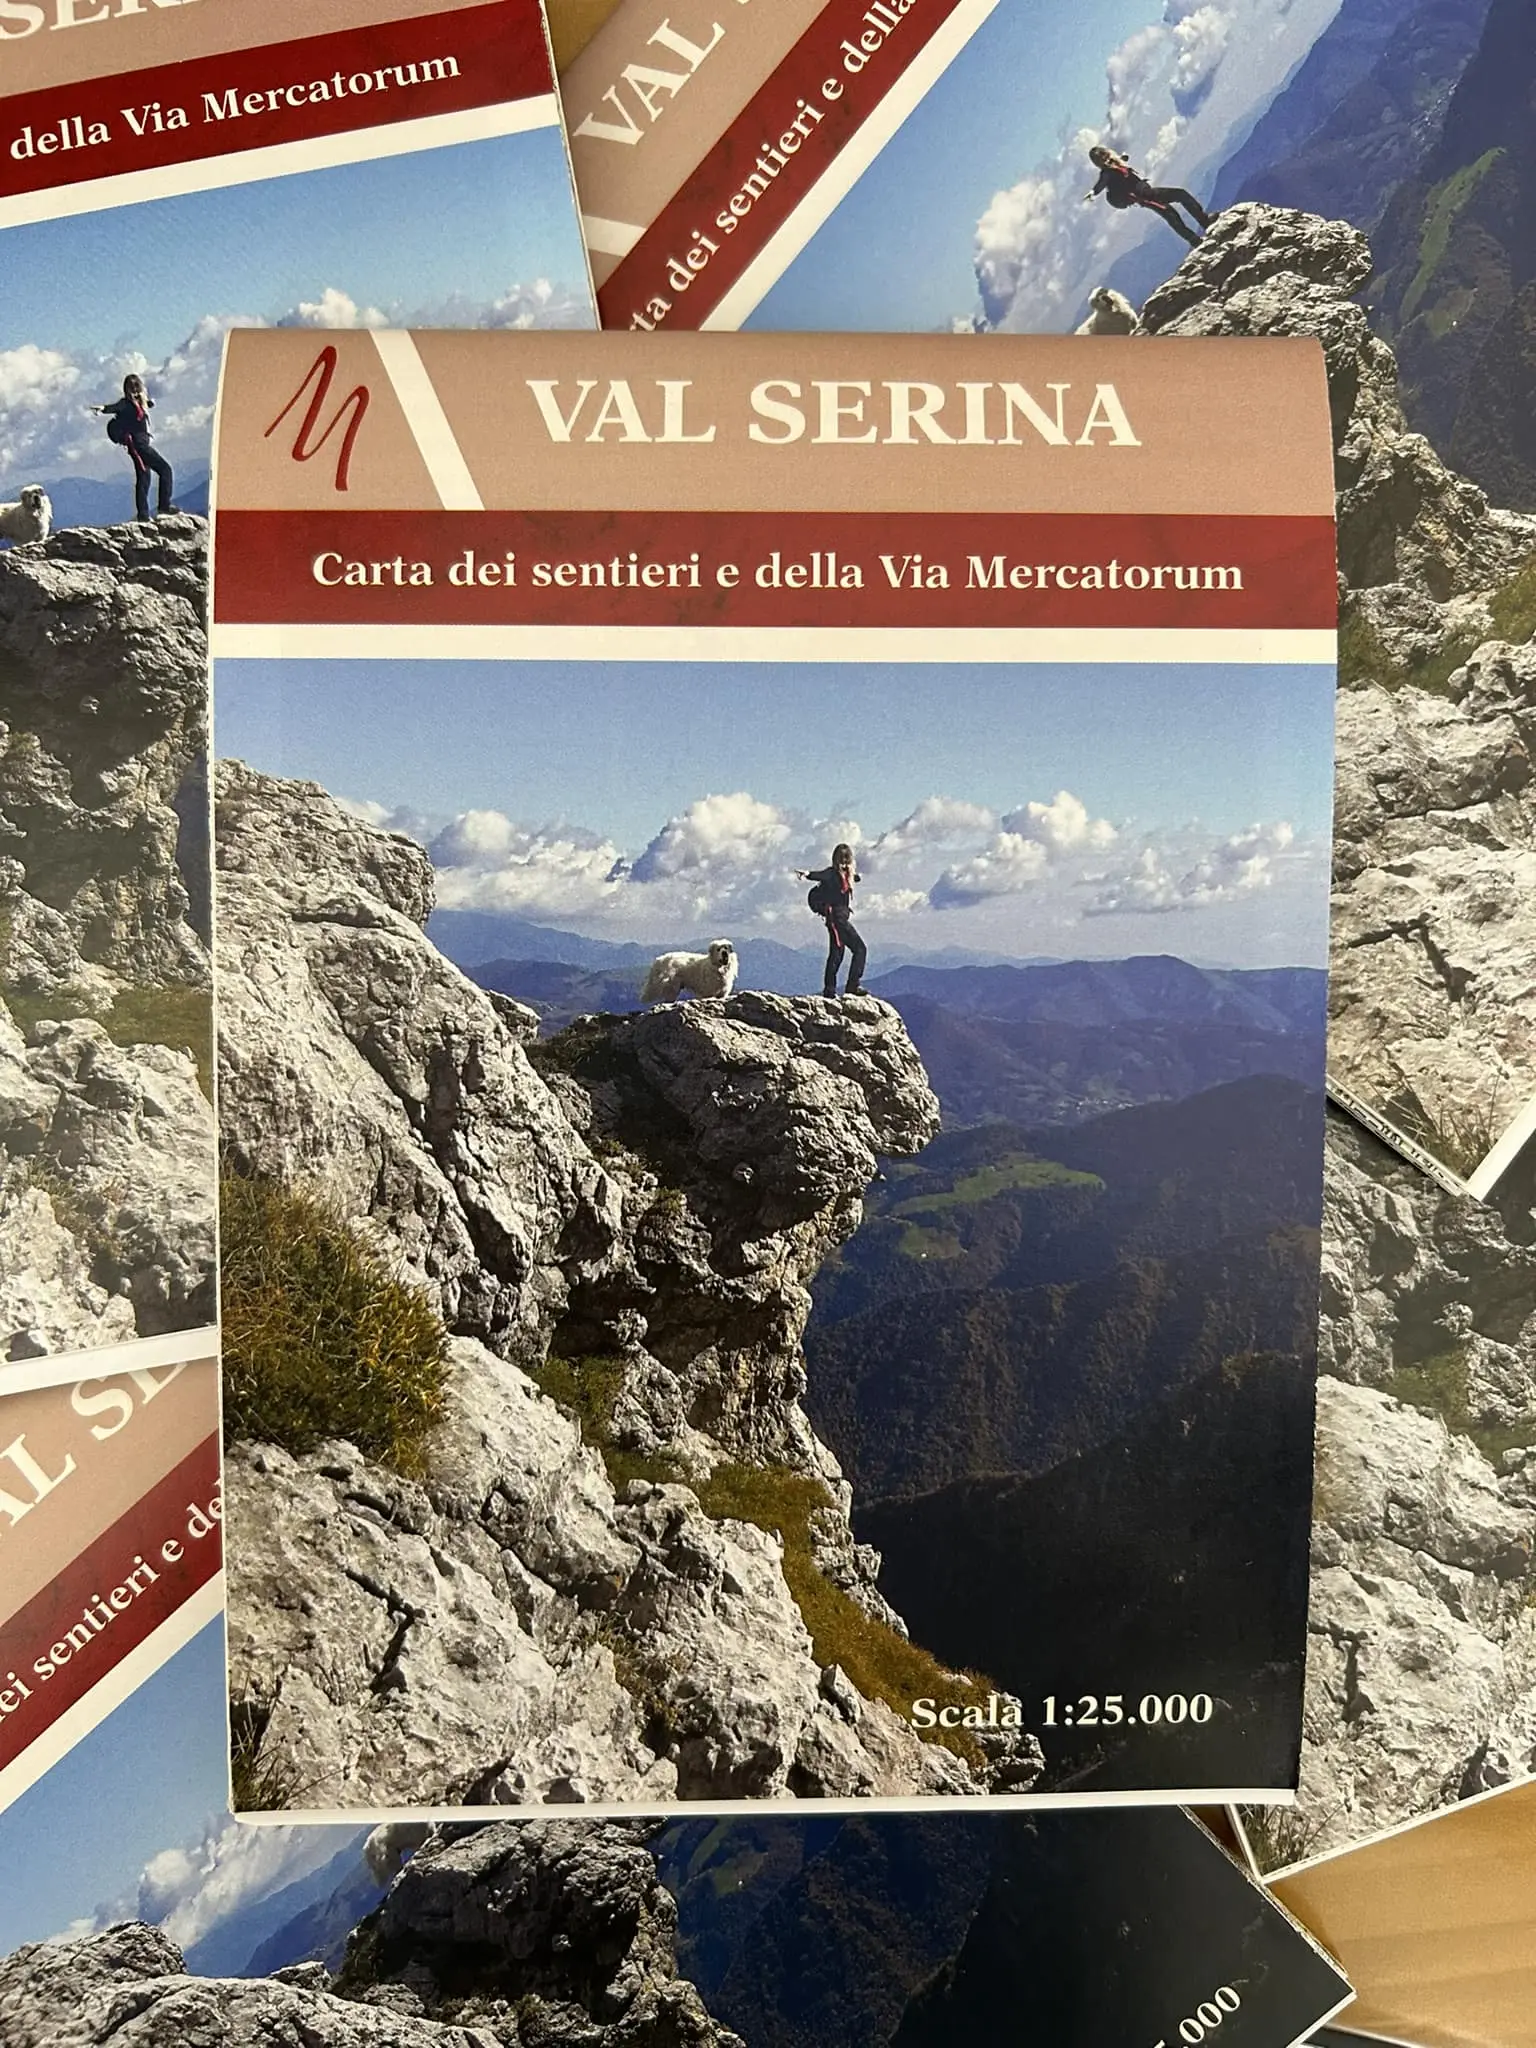 Sono disponibili presso gli uffici comunali le nuove cartine della rete sentieristica della Valle Serina.